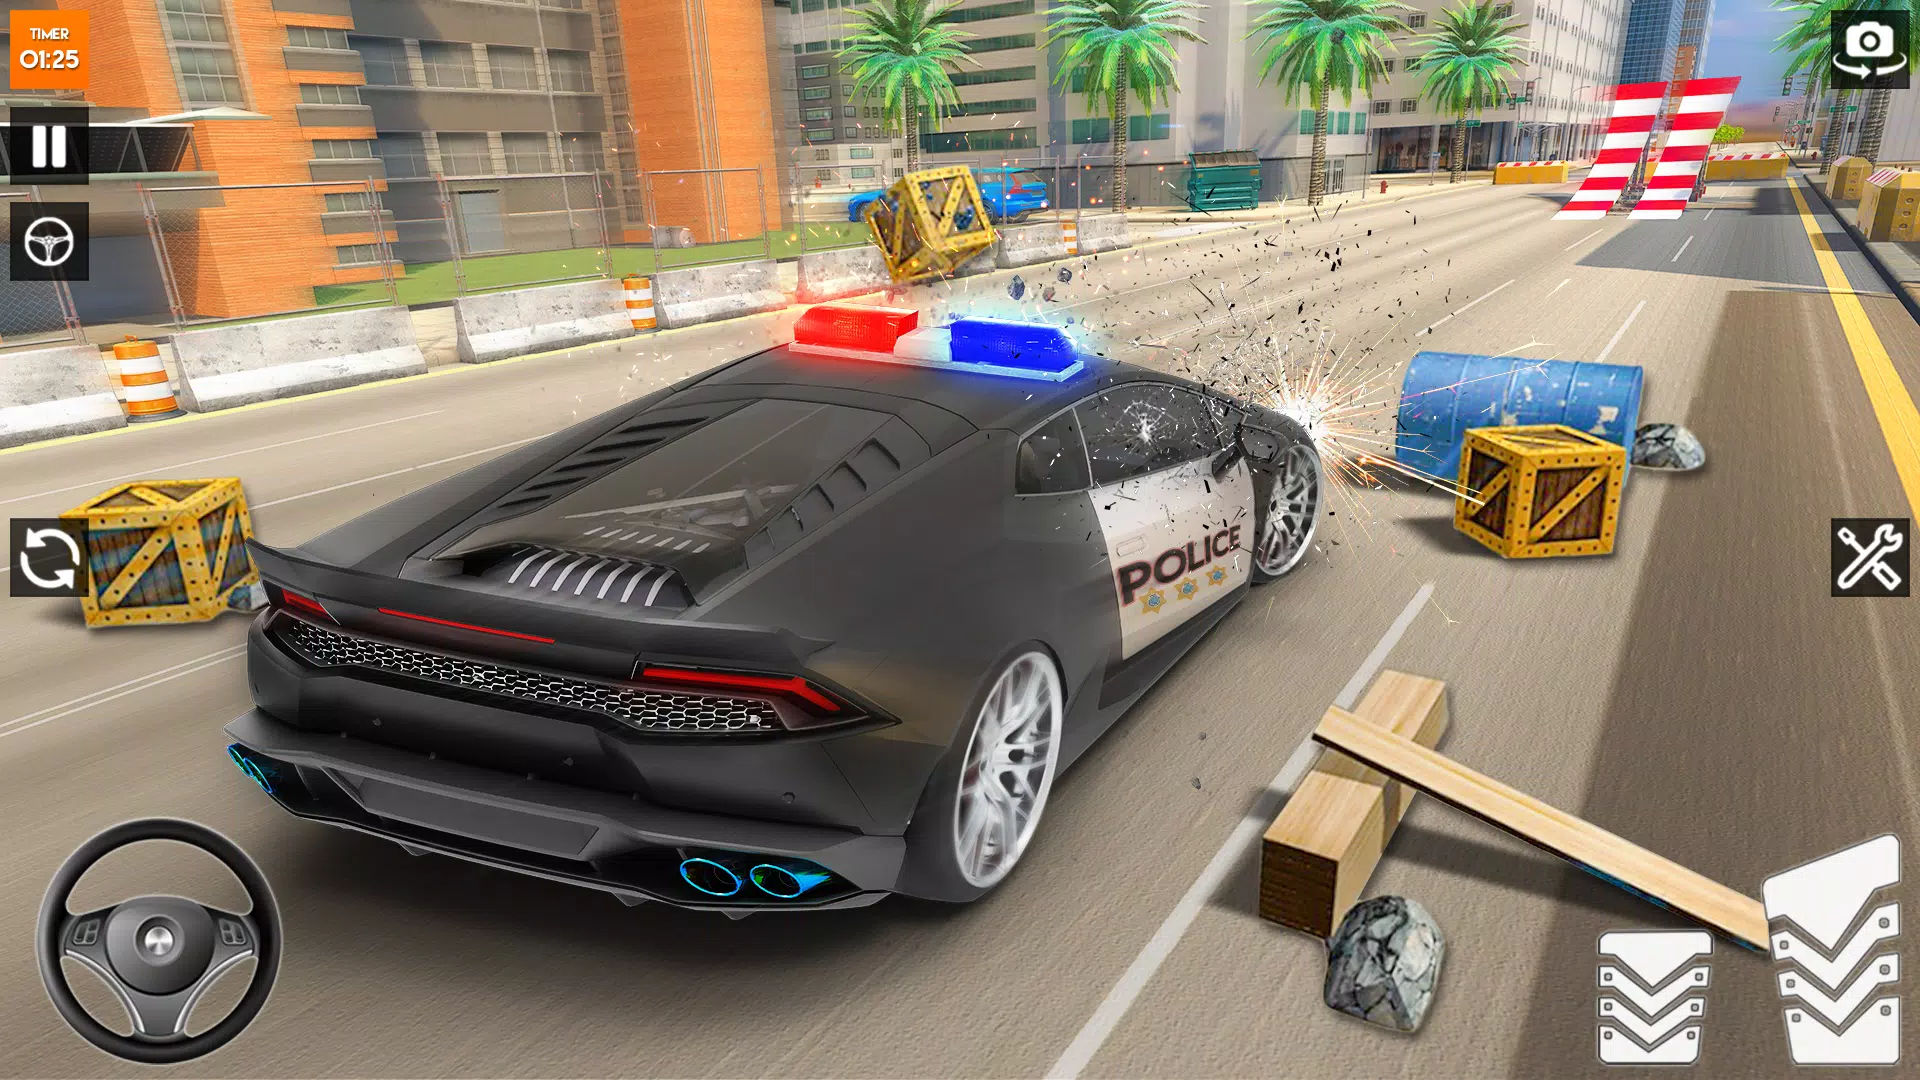 Android 用の 警察の車のゲーム 車のクラッシュ3d Apk をダウンロード